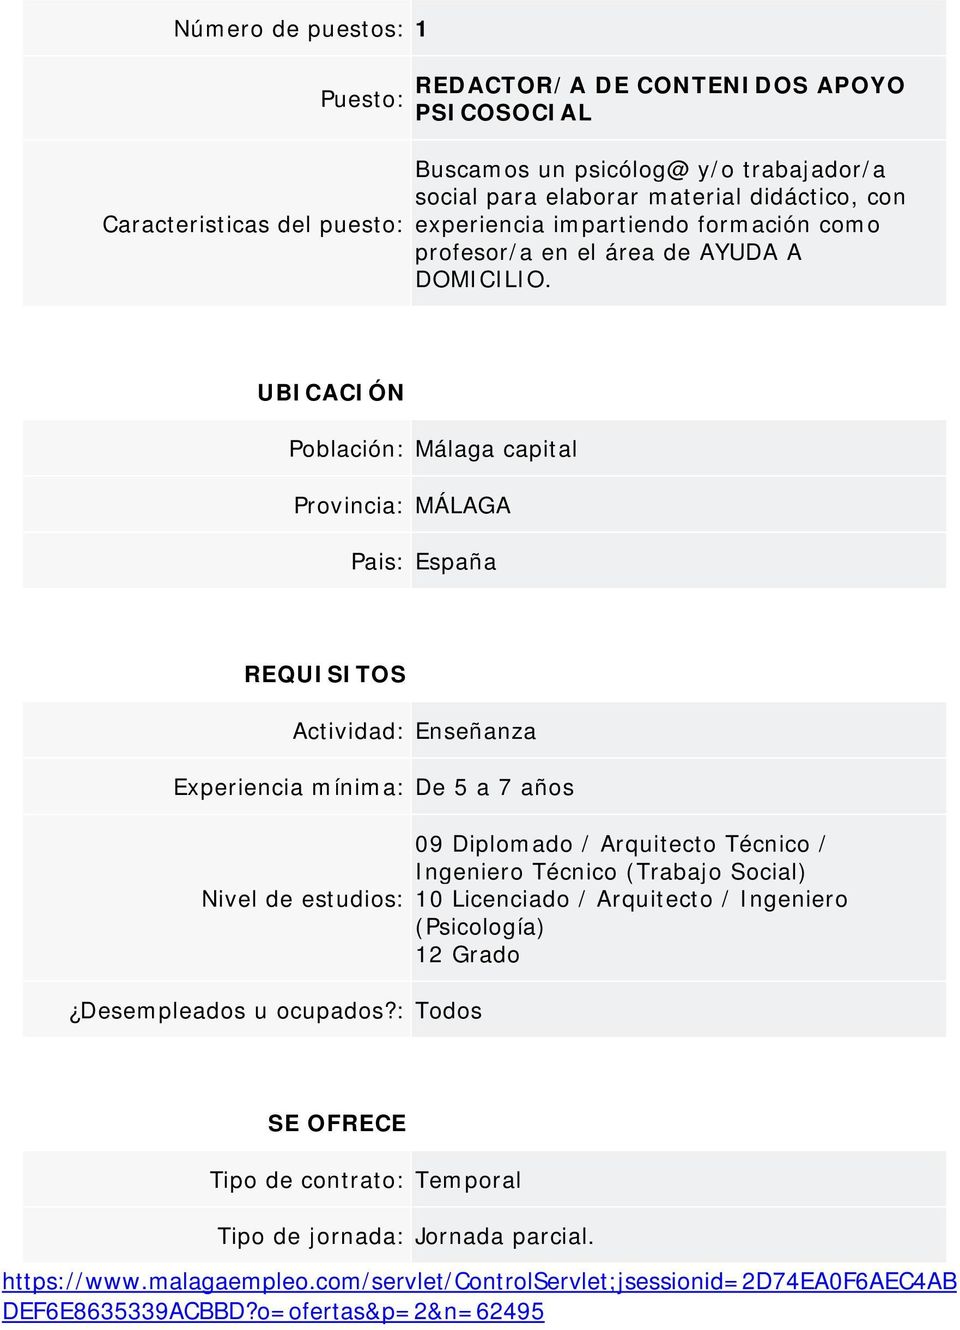 UBICACIÓN Población: Málaga capital Provincia: MÁLAGA Pais: España REQUISITOS Actividad: Enseñanza Experiencia mínima: De 5 a 7 años Nivel de estudios: Desempleados u ocupados?